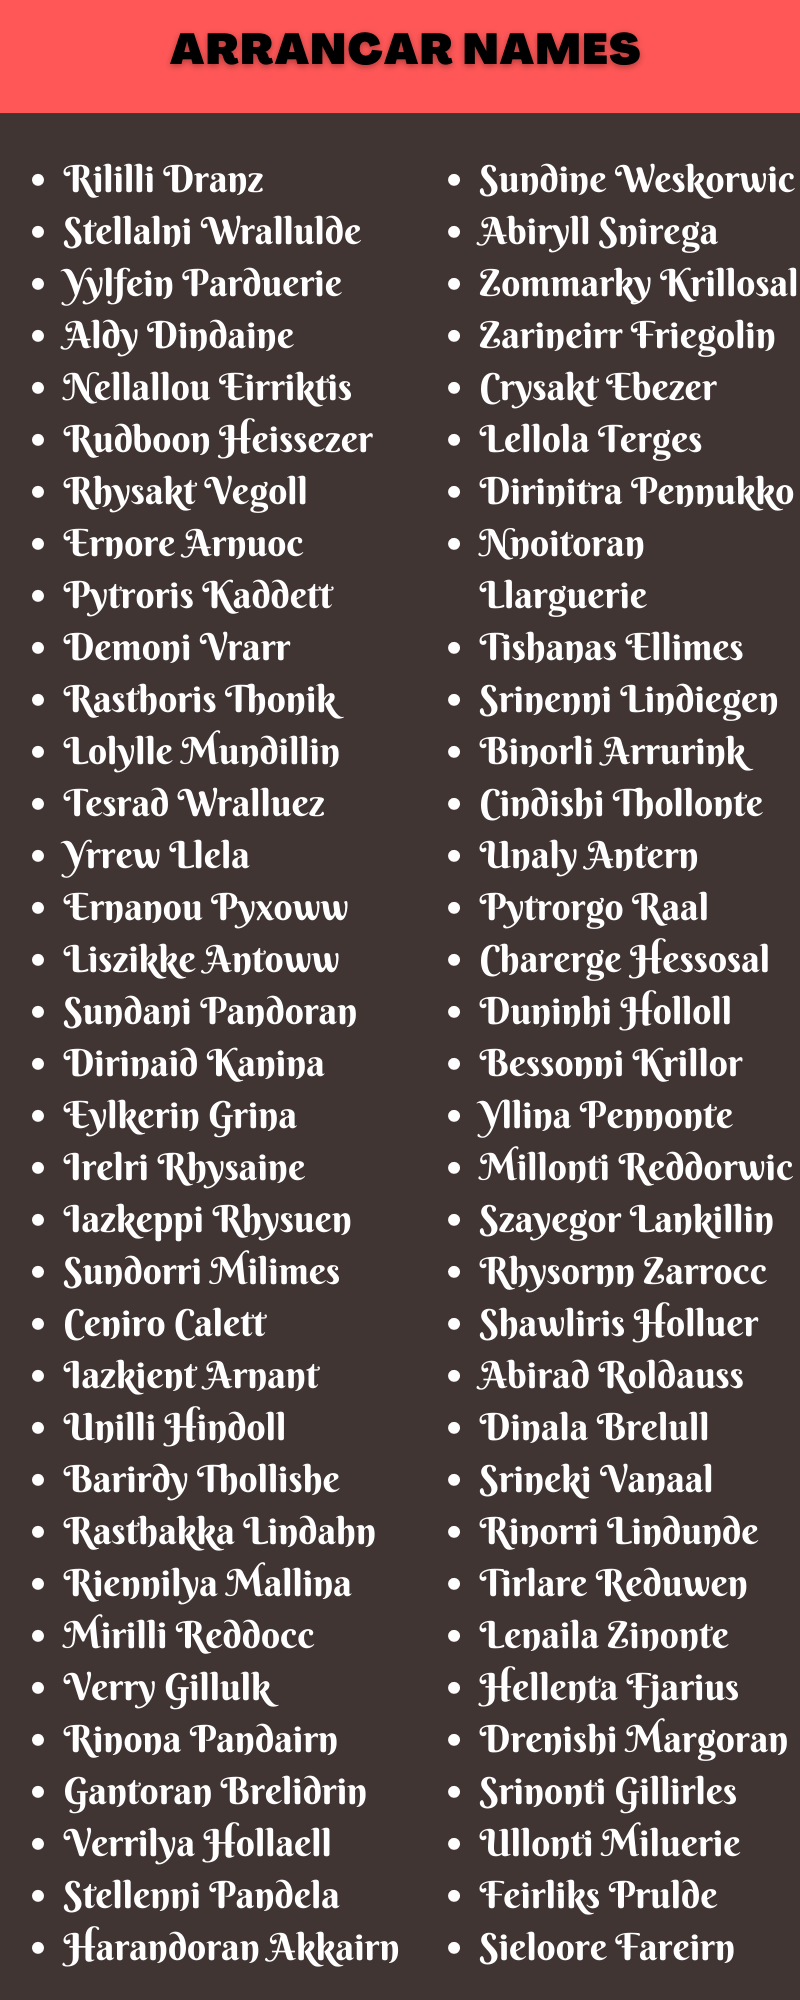 Arrancar Names